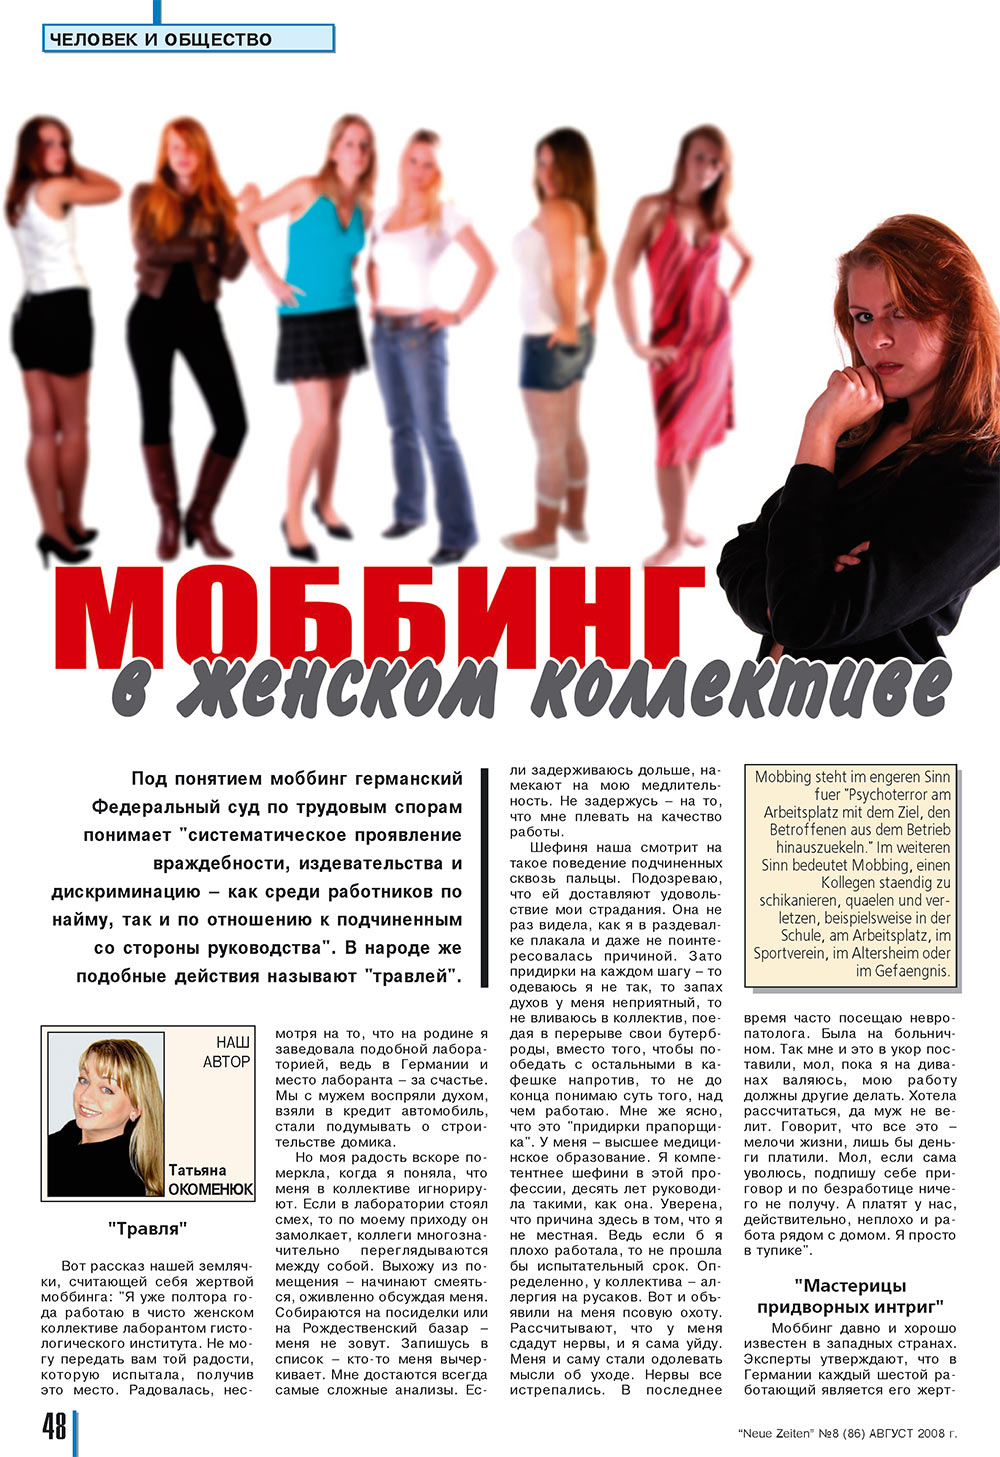 Neue Zeiten, журнал. 2008 №8 стр.48